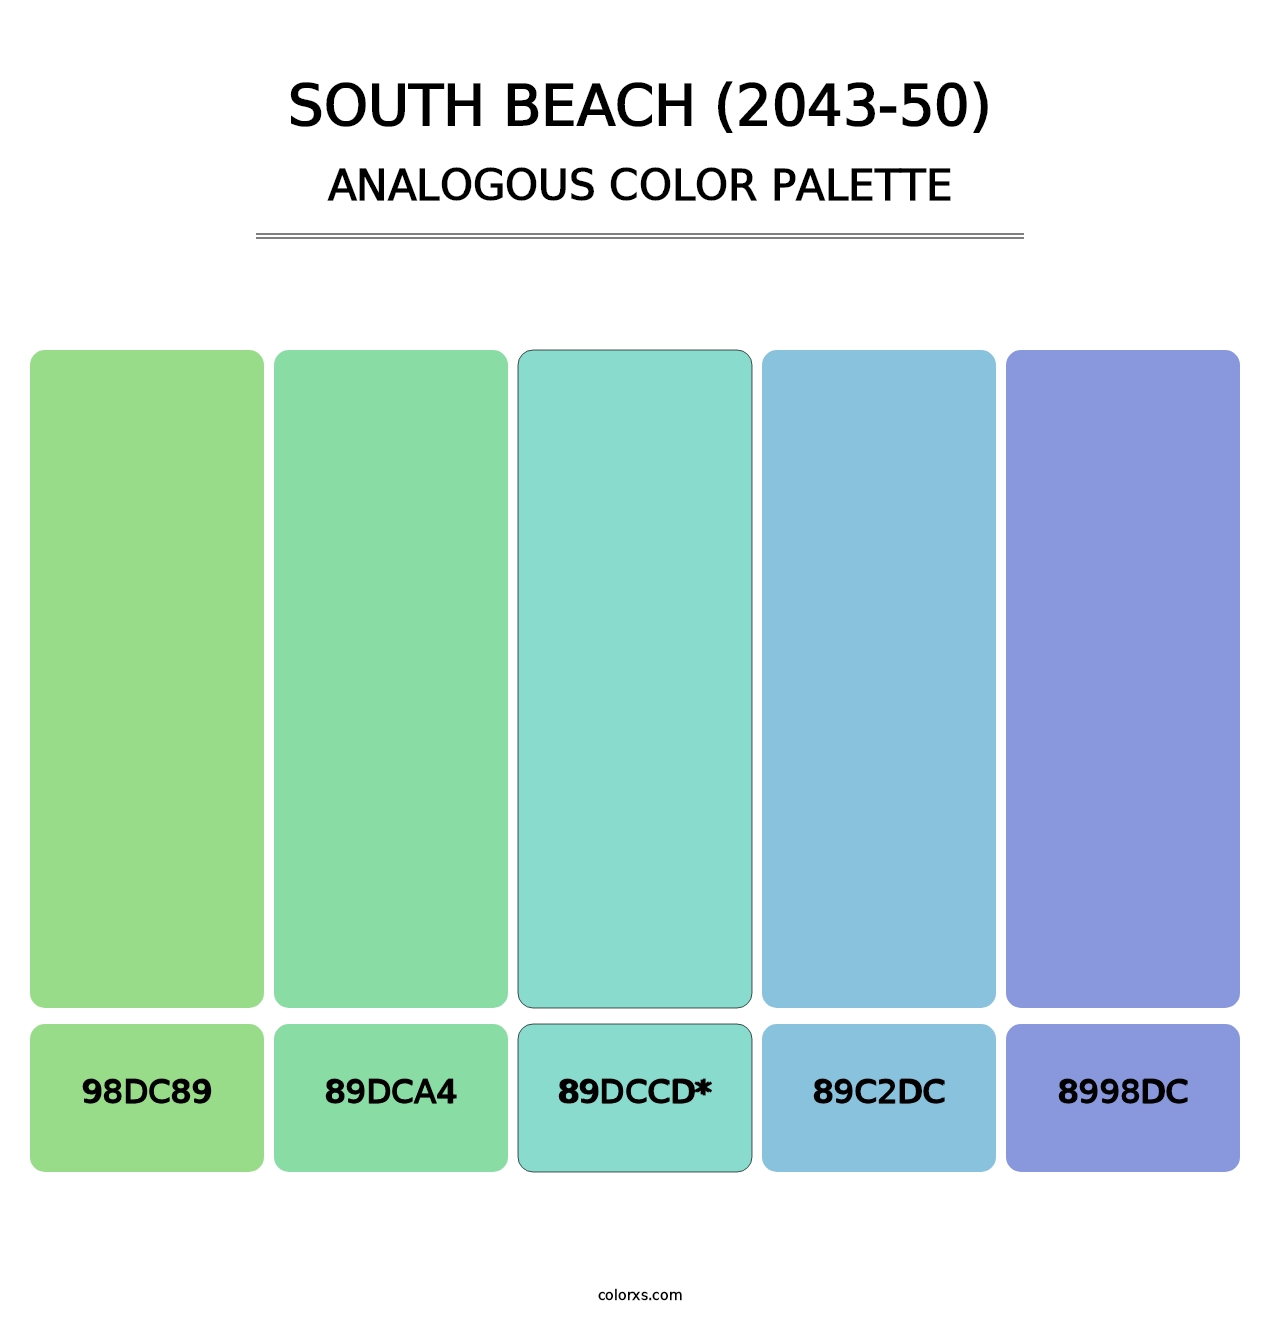 South Beach (2043-50) - Analogous Color Palette